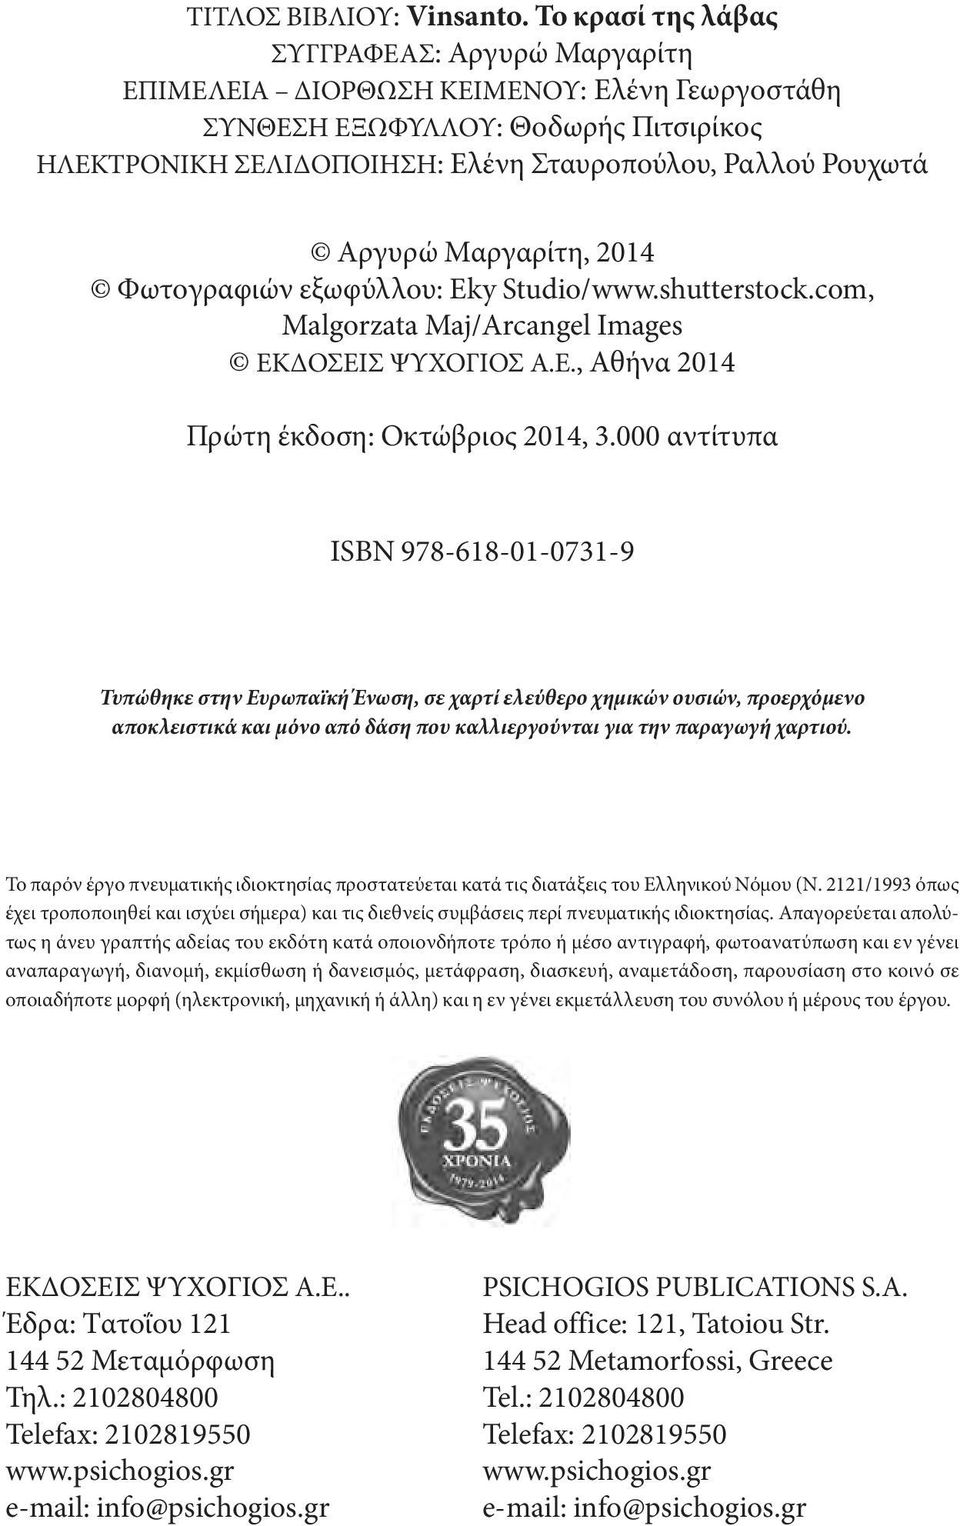 αργυρώ Μαργαρίτη, 2014 φωτογραφιών εξωφύλλου: Eky Studio/www.shutterstock.com, Malgorzata Maj/Arcangel Images εκδοσεισ ΨυΧογιοσ α.ε., αθήνα 2014 πρώτη έκδοση: οκτώβριος 2014, 3.